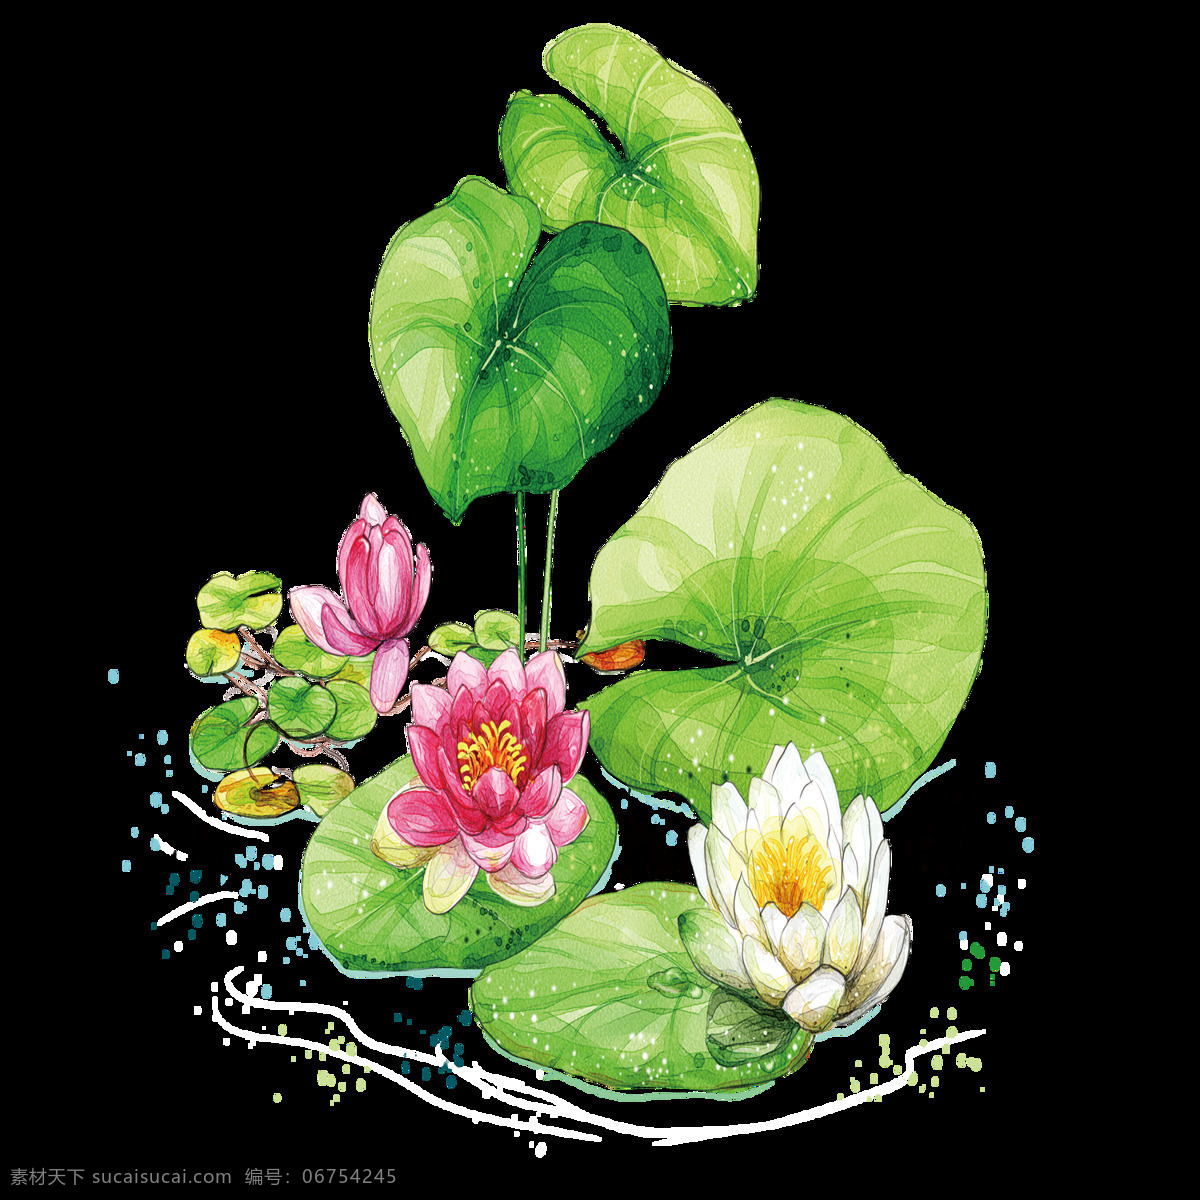 中国 风 荷叶 荷花 绘画 中国风 传统 水墨画 创意设计 植物 花朵 荷叶荷叶 水彩 新中式设计 国画 绿叶 夏日 装饰画 文化艺术 绘画书法